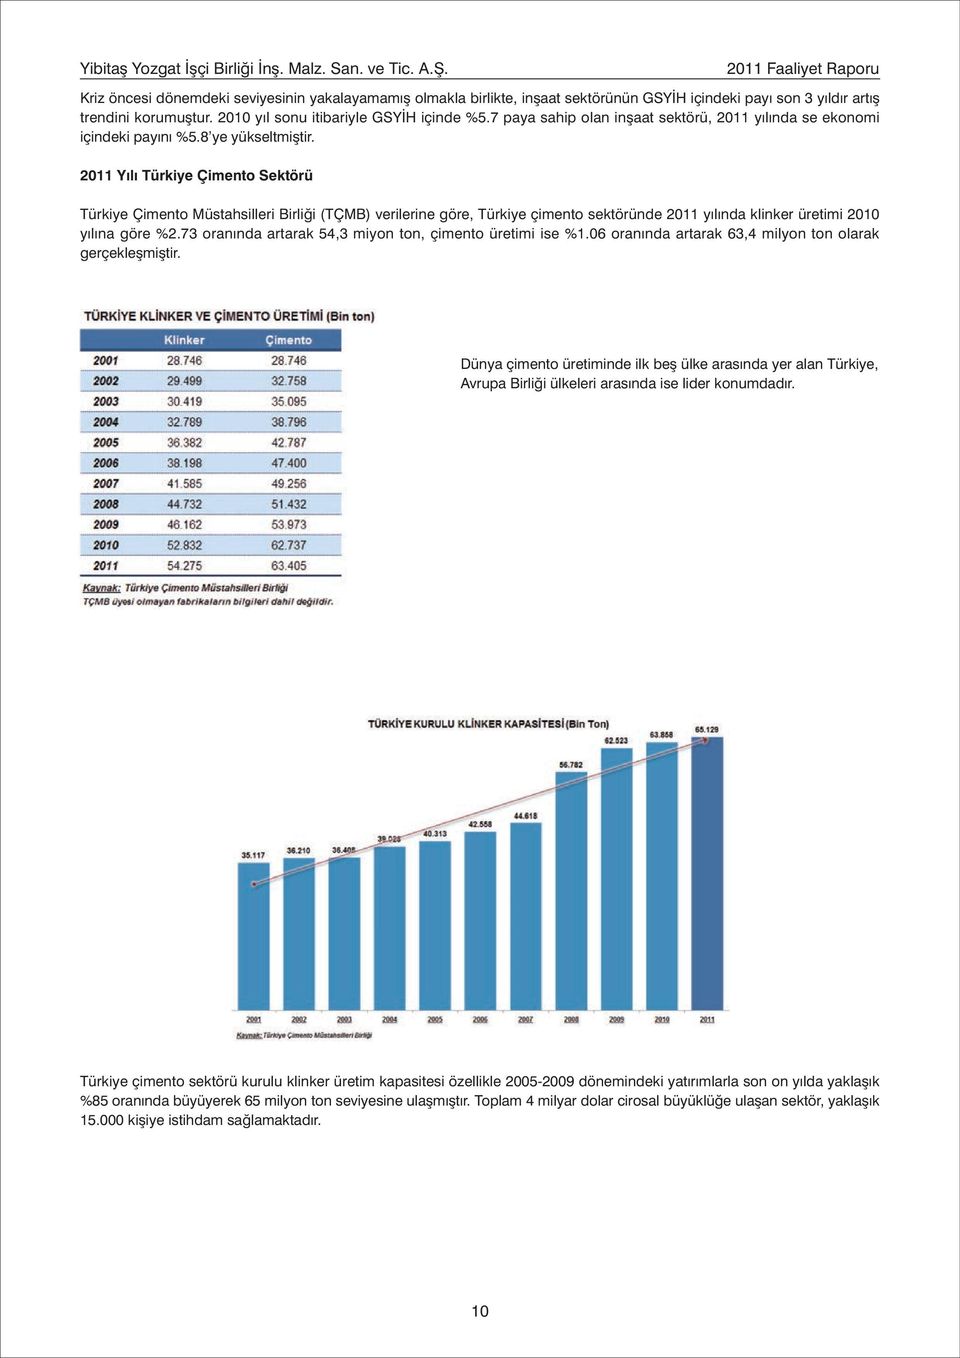 2010 yýl sonu itibariyle GSYÝH içinde %5.7 paya sahip olan inþaat sektörü, 2011 yýlýnda se ekonomi içindeki payýný %5.8 ye yükseltmiþtir.